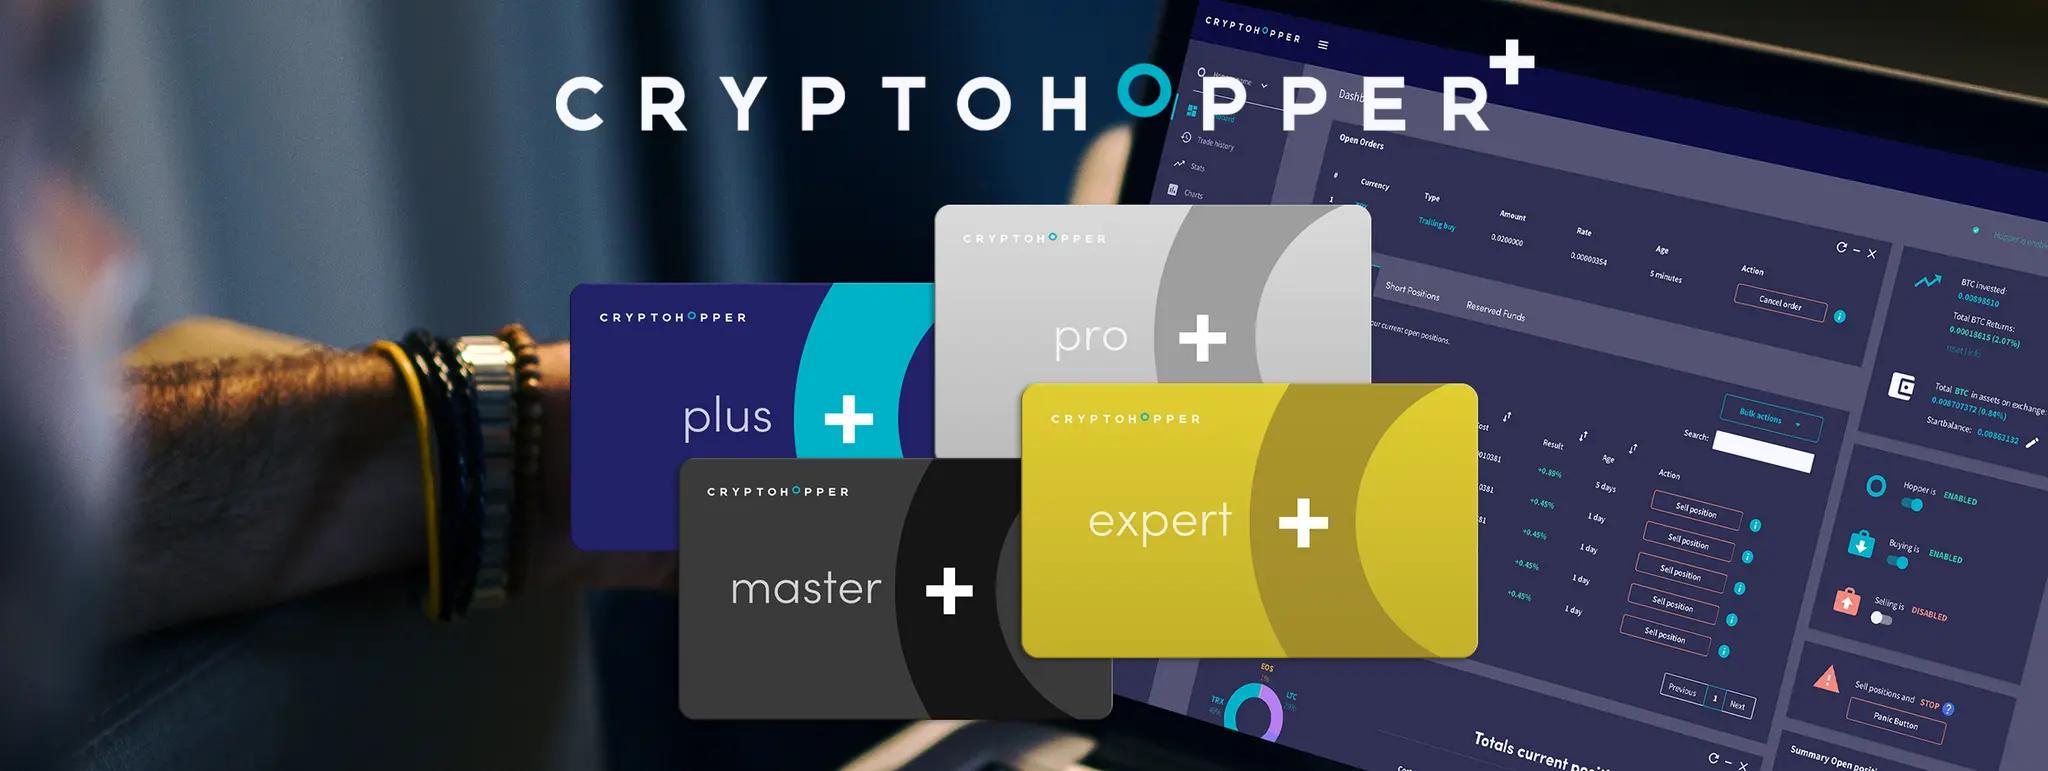 Cryptohopper launches its Cryptohopper+ program